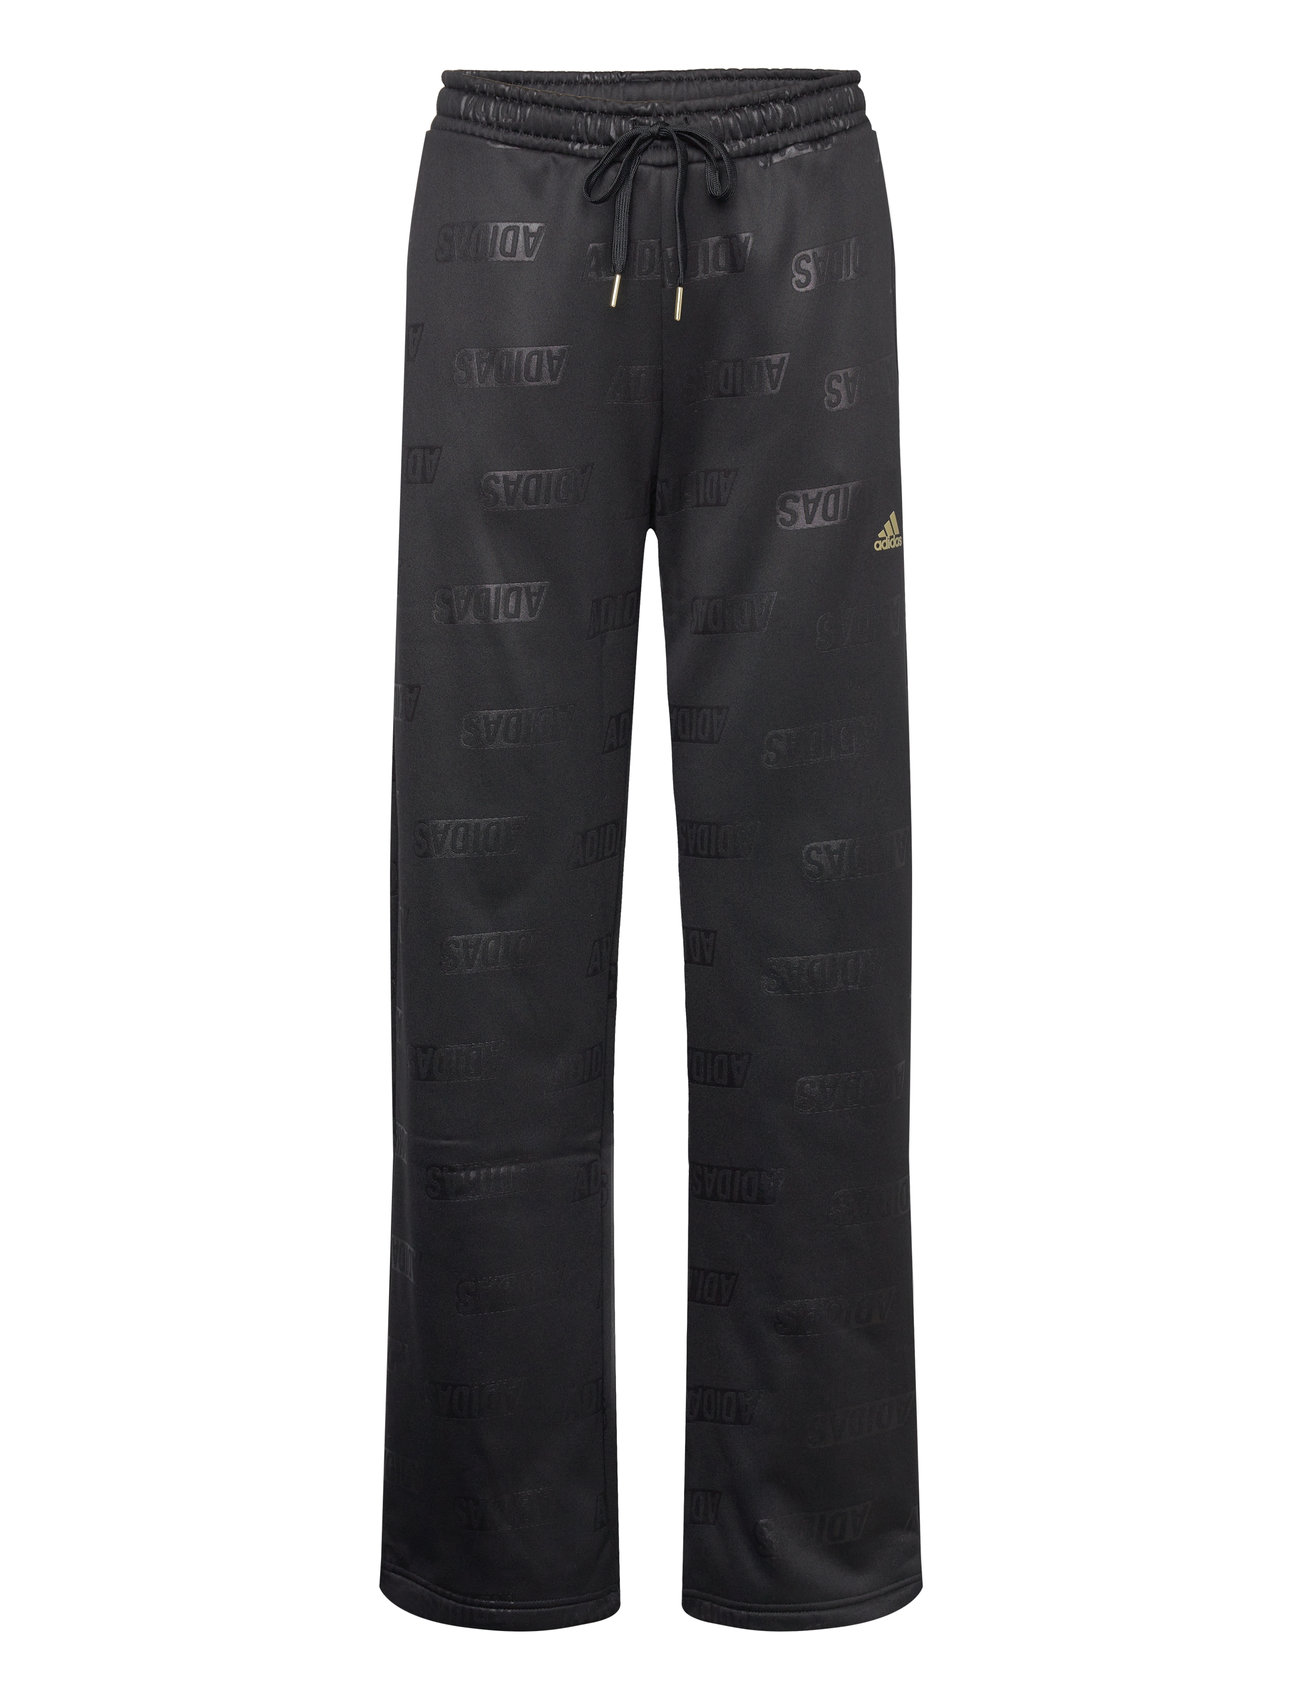 Adidas W MT PT pant noir, pantalon de survêtement femme